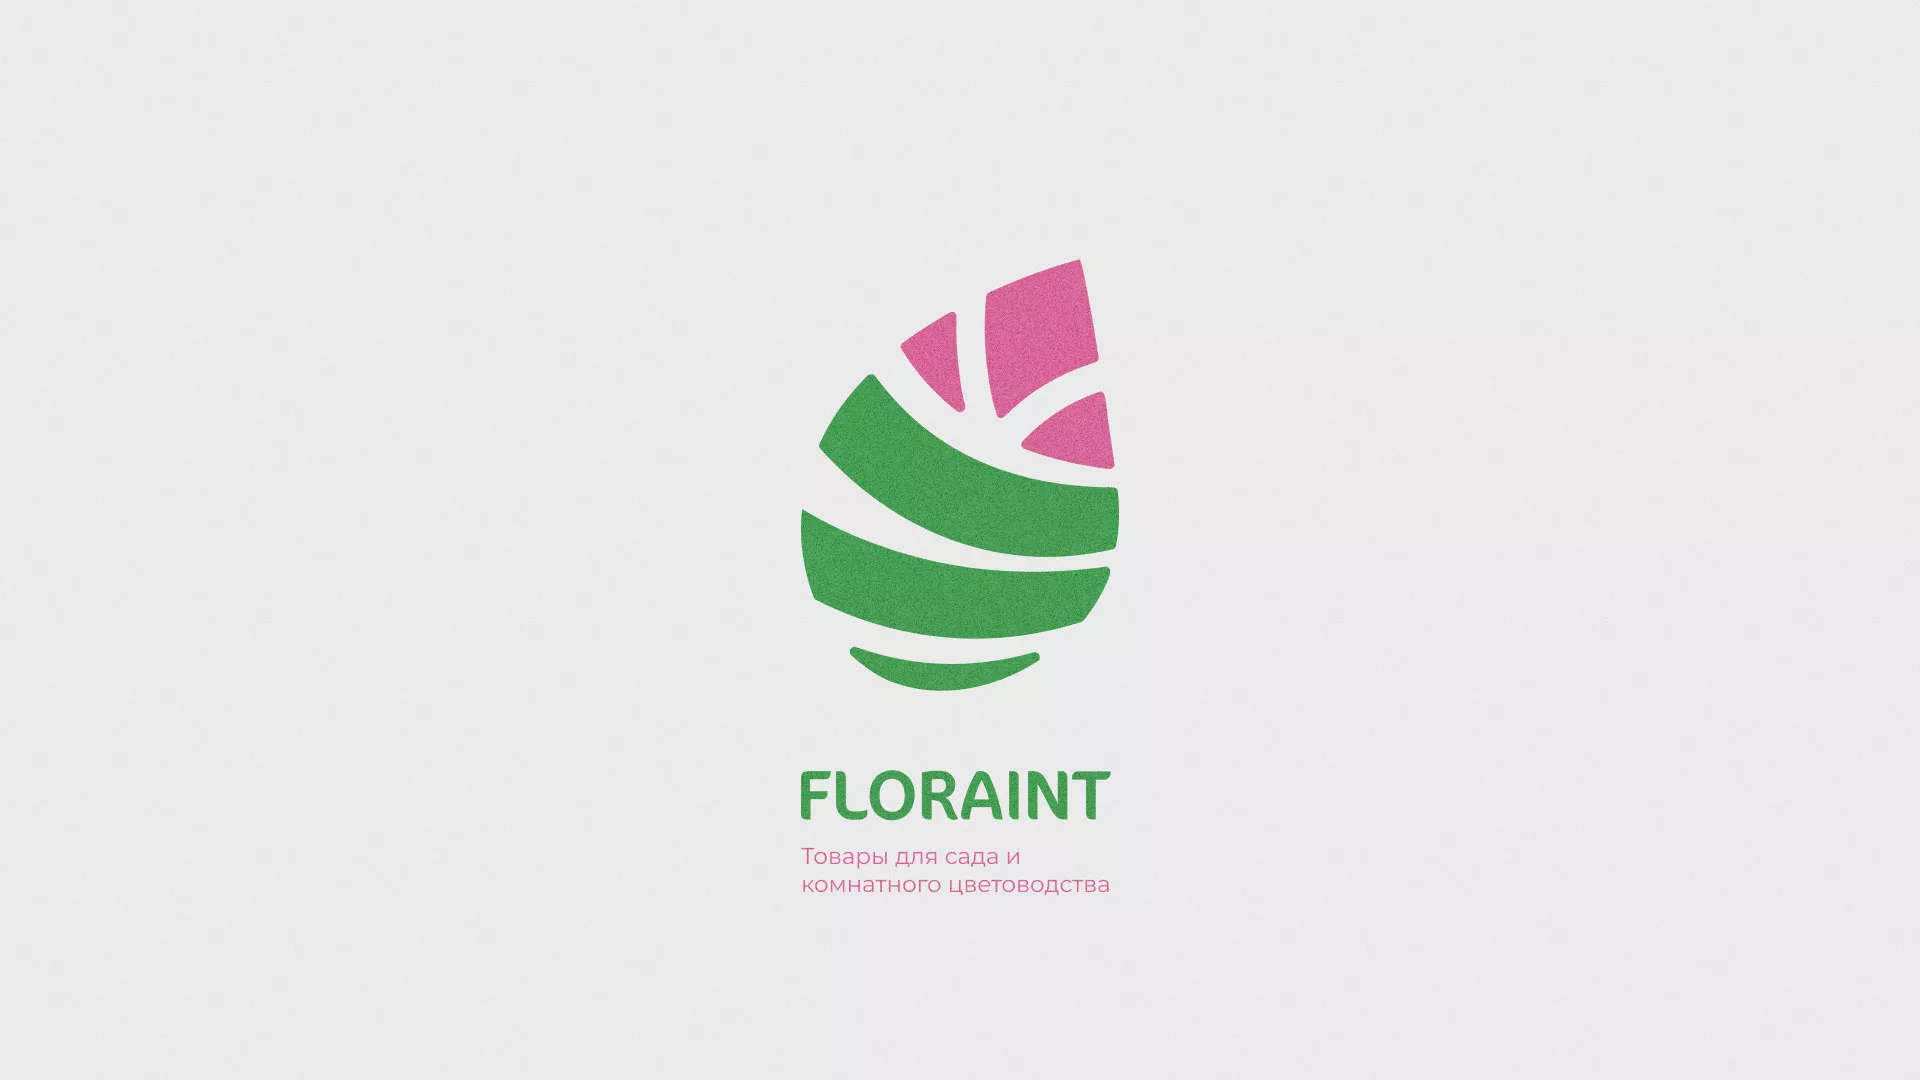 Разработка оформления профиля Instagram для магазина «Floraint» в Баймаке